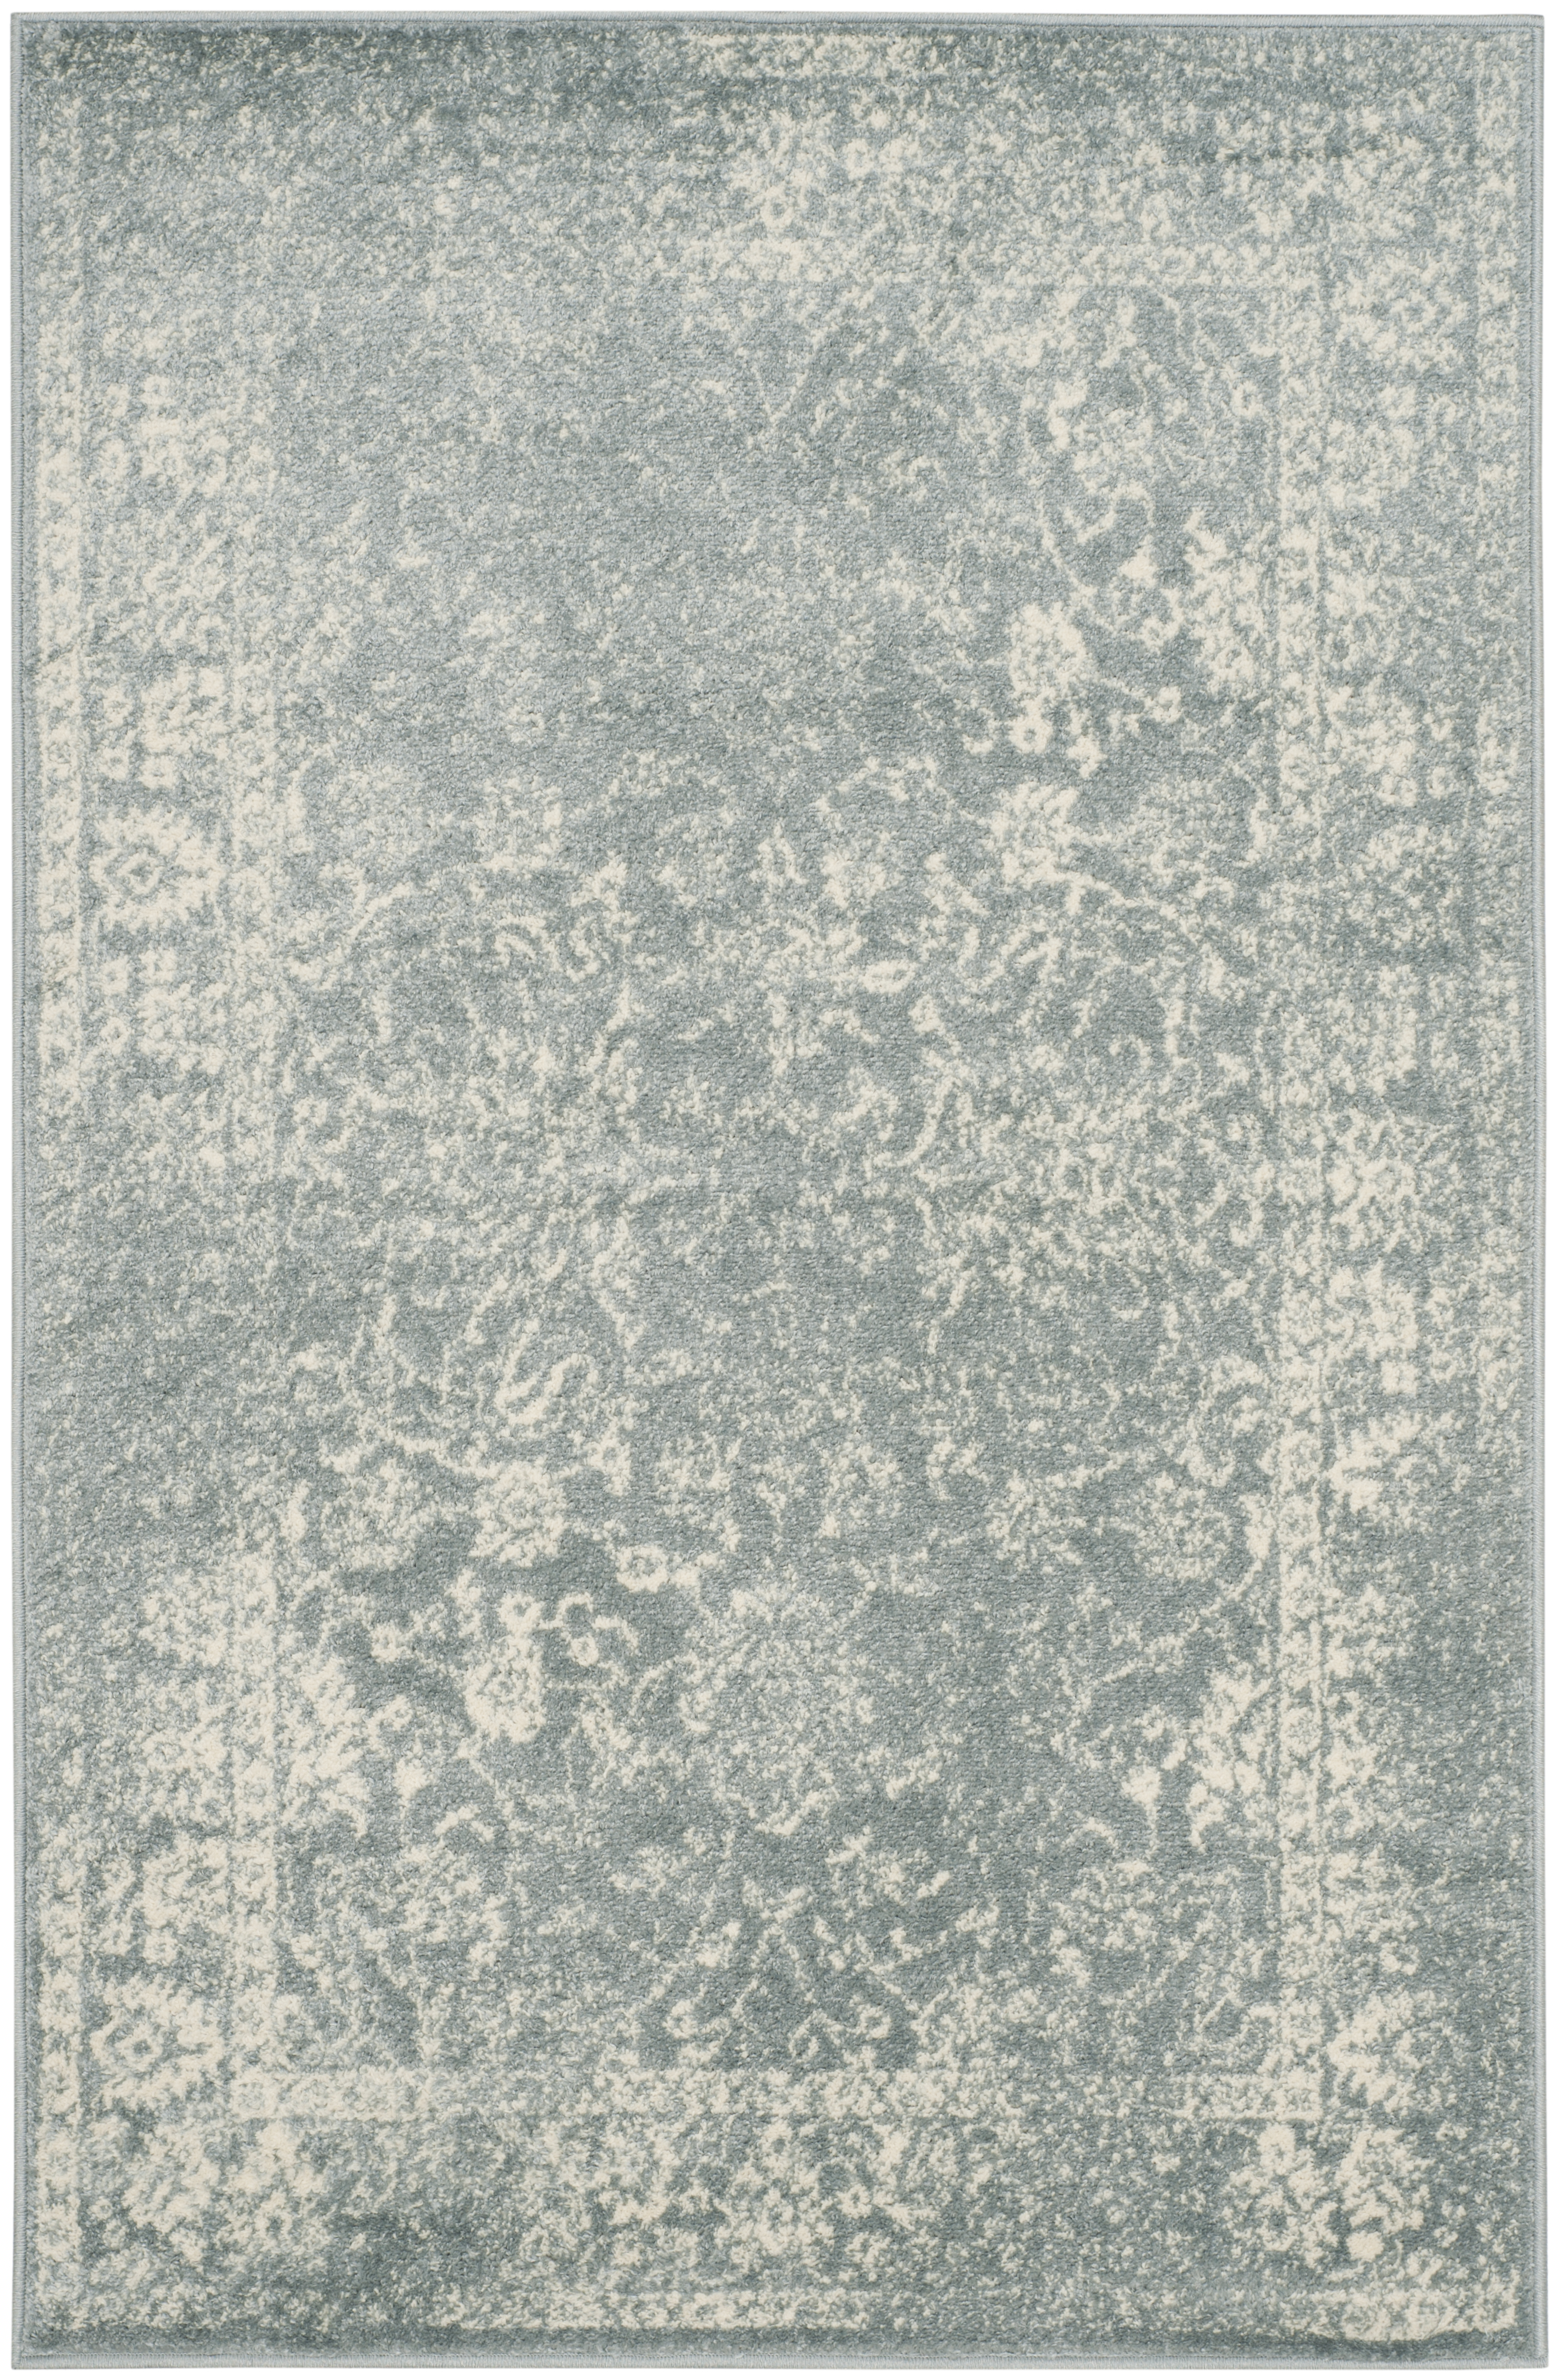 Tapis de salon interieur en gris ardoise & ivoire, 122 x 183 cm